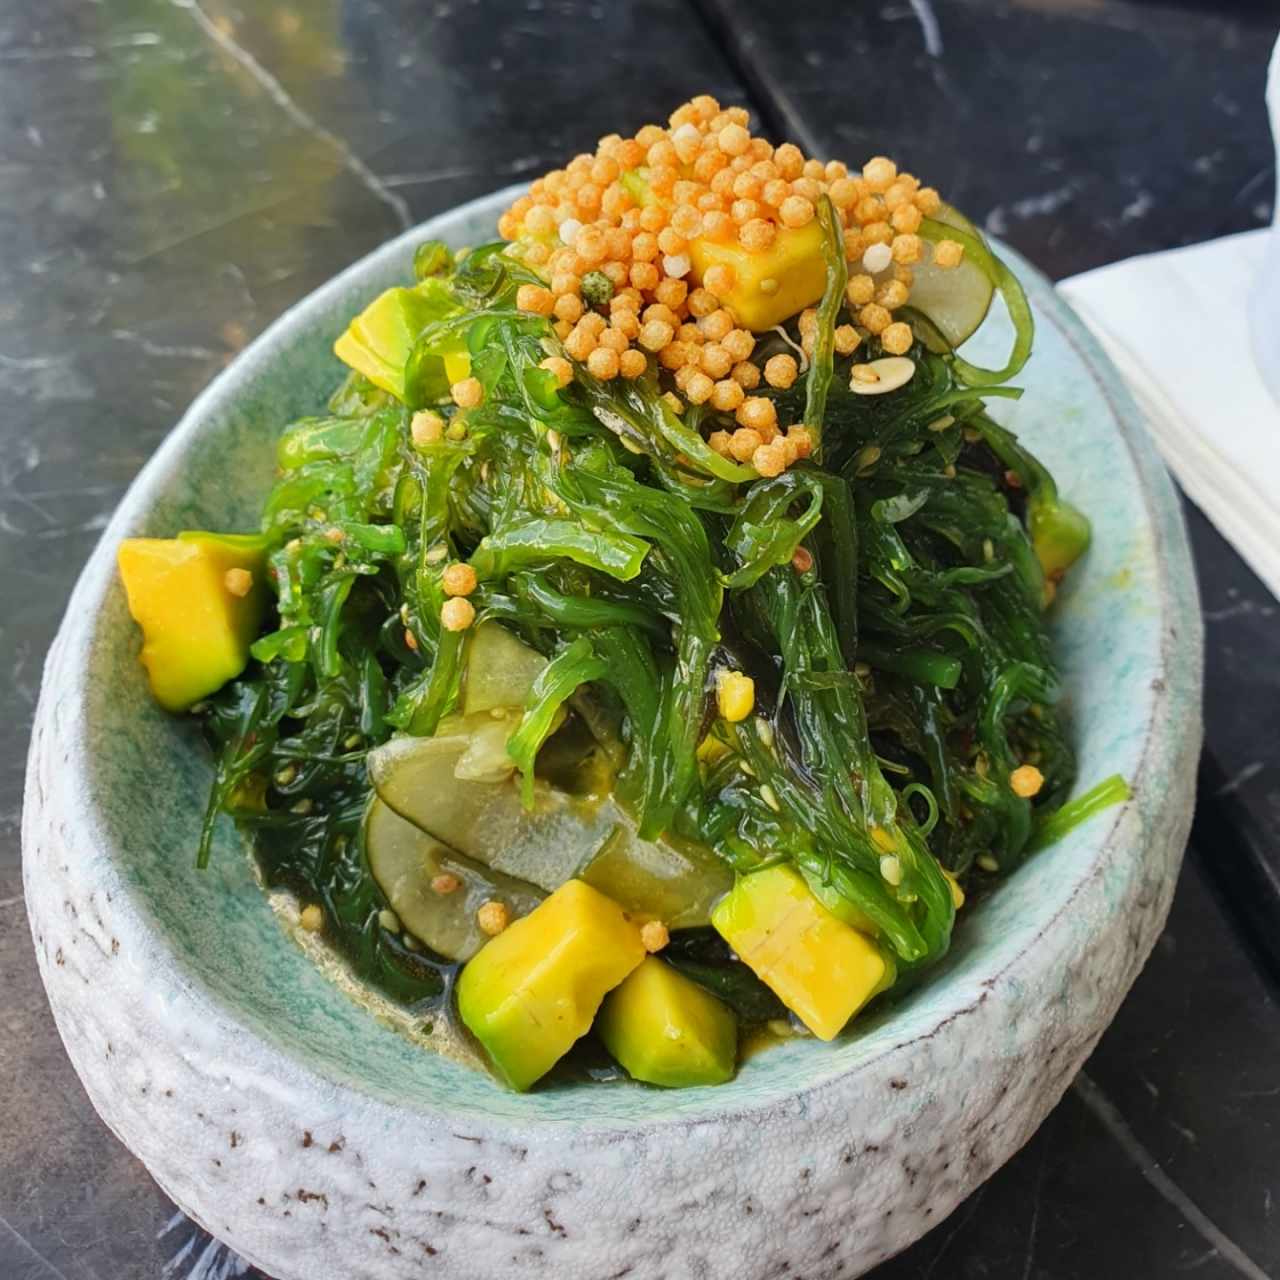 Salad - Sunomono Salad